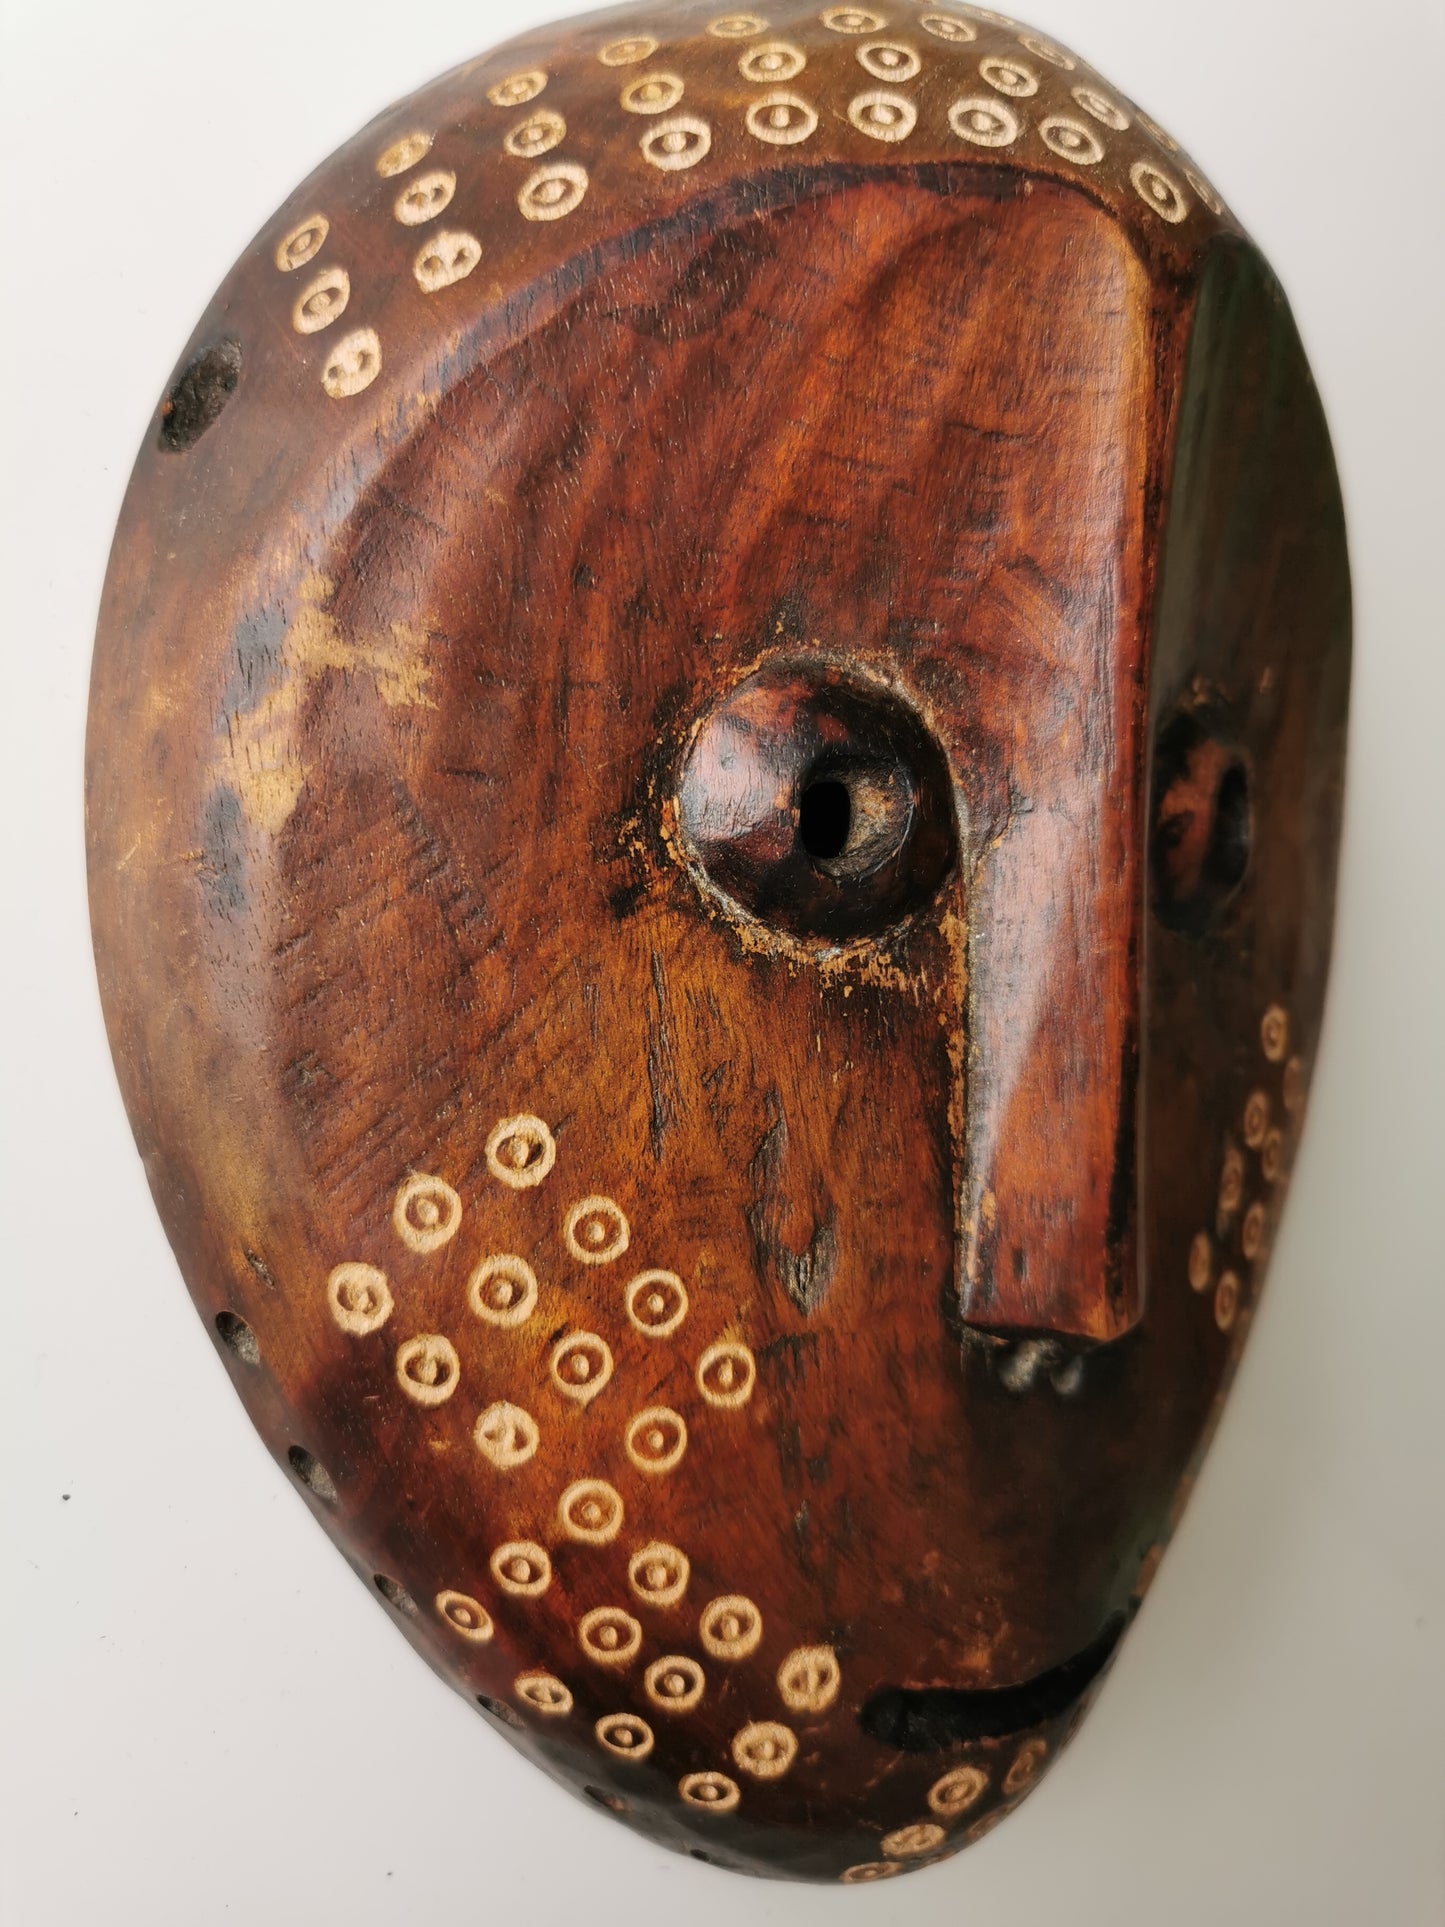 Lega Mask, Lukungu (Skull Ornament), Bwami Society